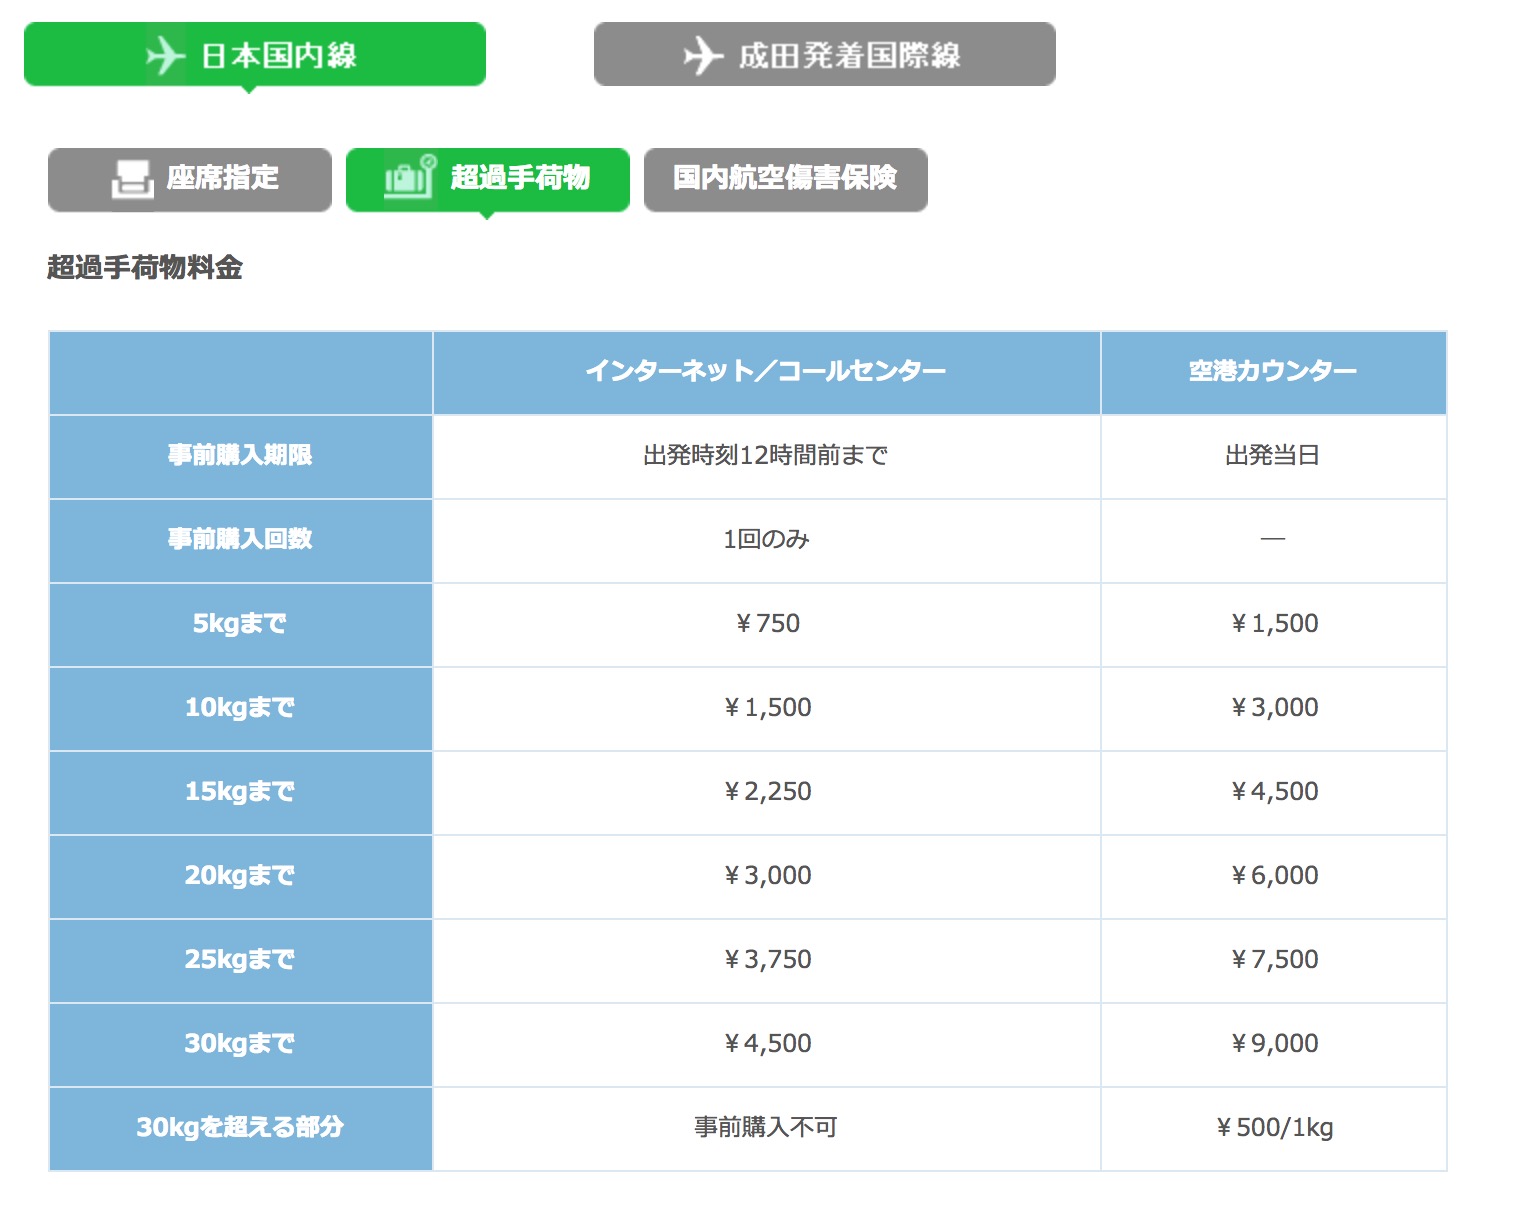 春秋航空日本(SPRING JAPAN)超過手荷物料金表